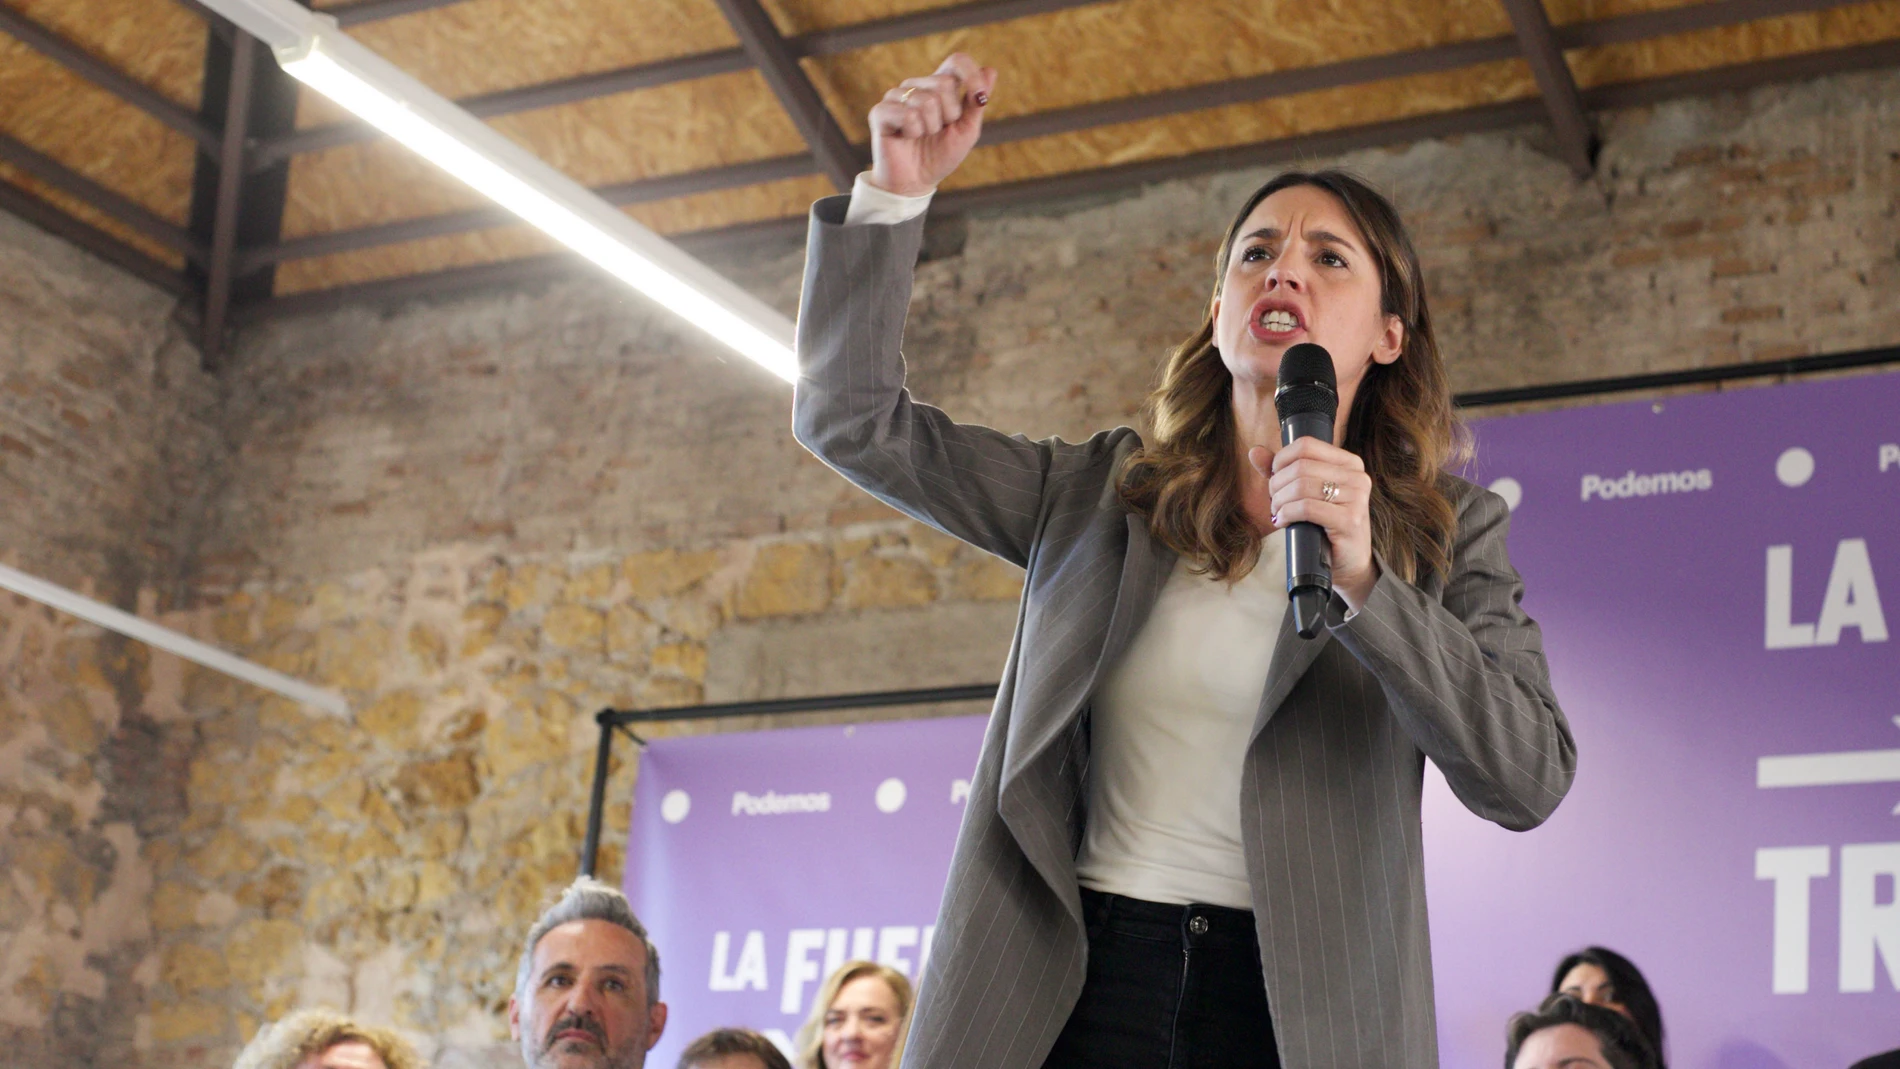 Acto de Podemos en Murcia